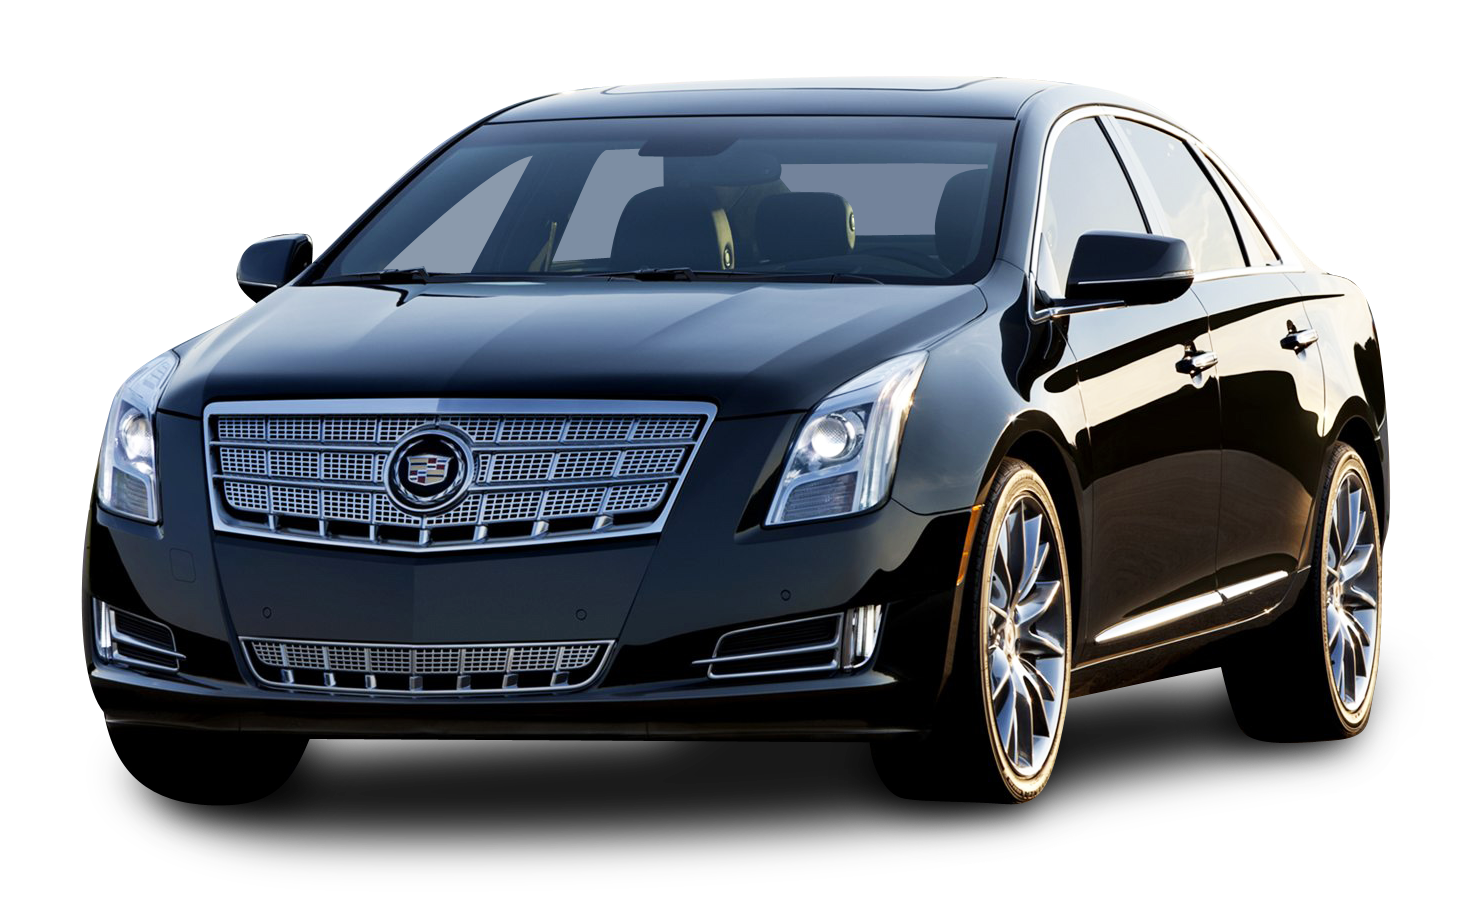 Cadillac Xts Black Car Png Image - Cadillac, Transparent background PNG HD thumbnail